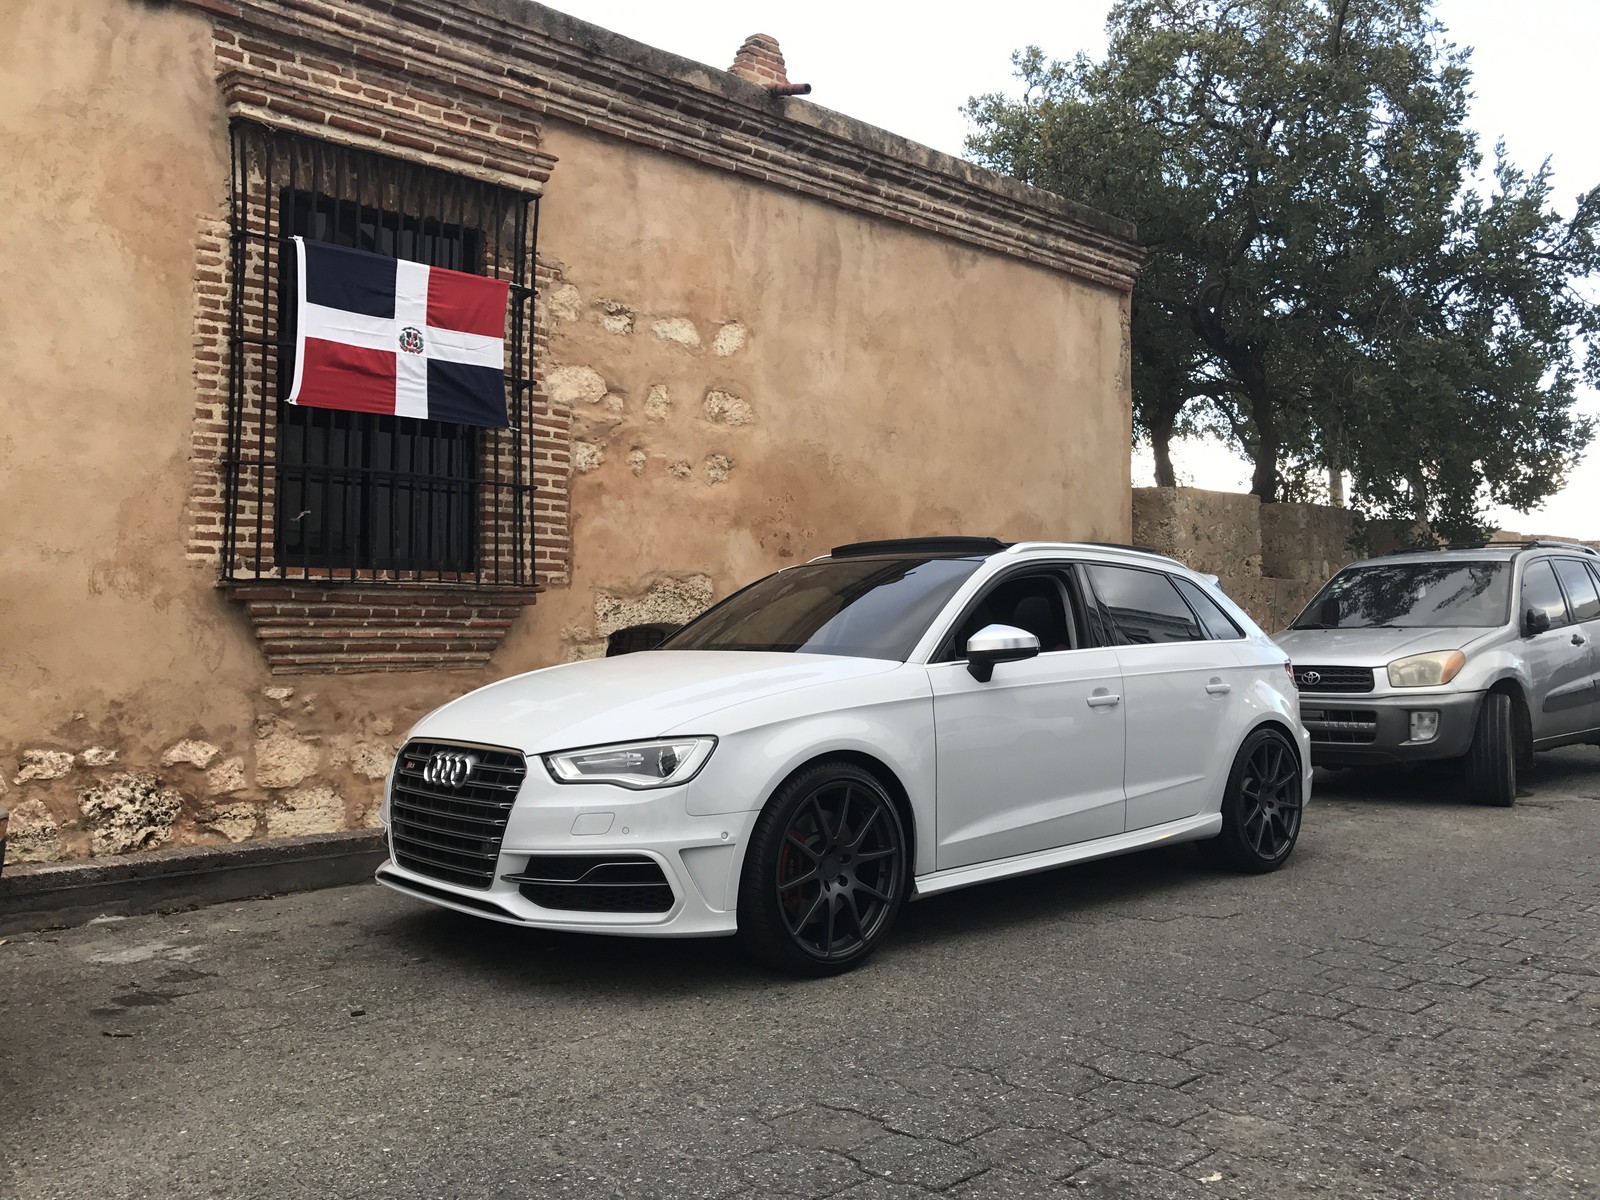 White 2015 Audi S3 